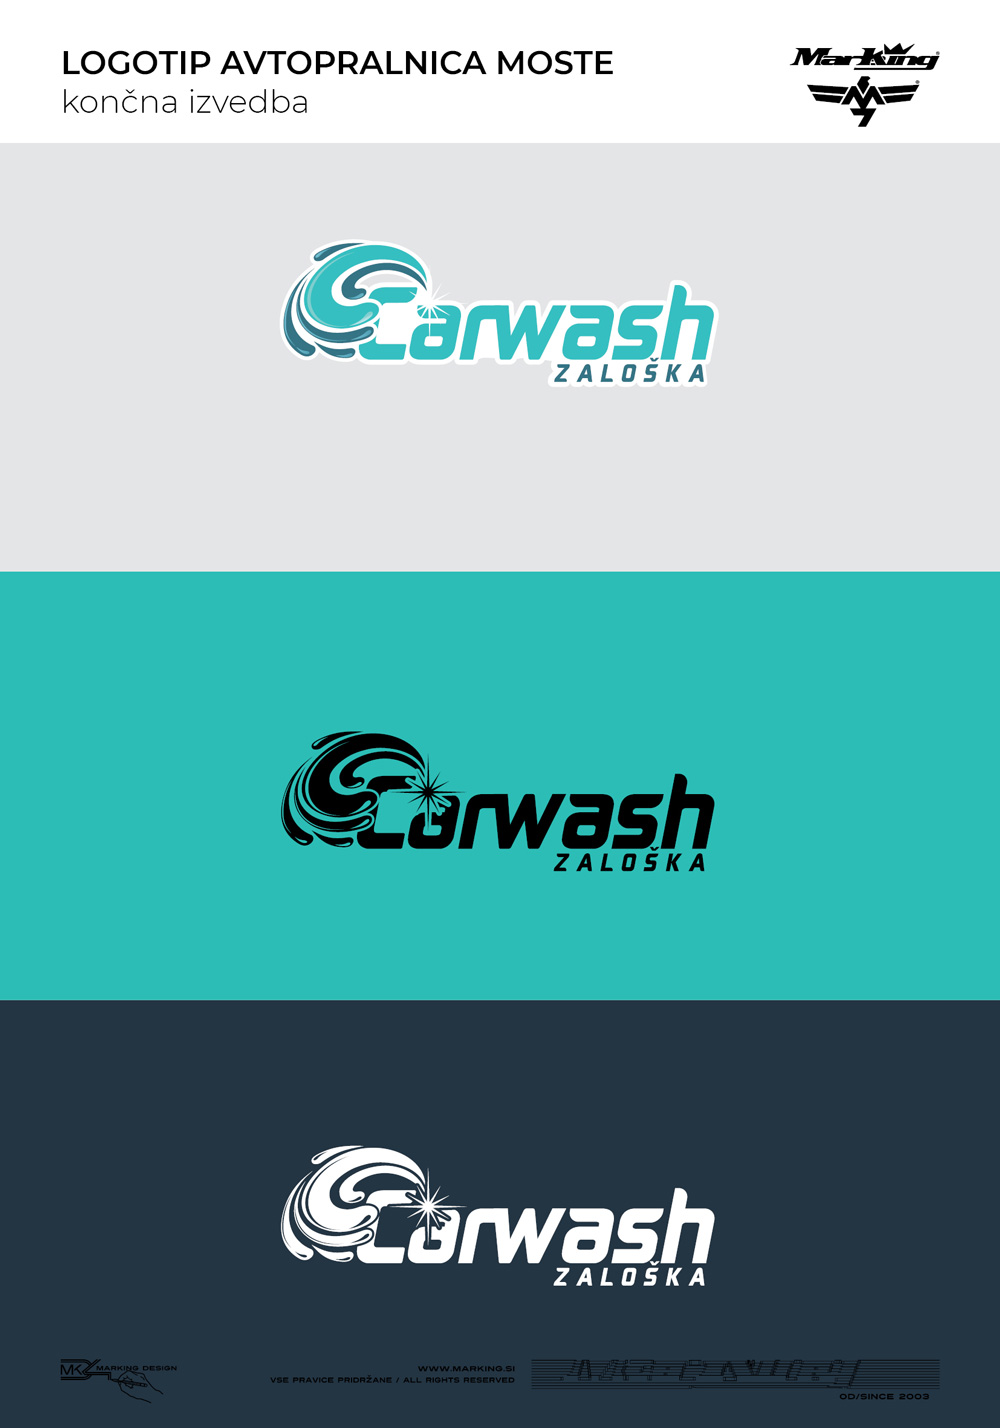 oblikovanje logotipa Carwash Zaloška